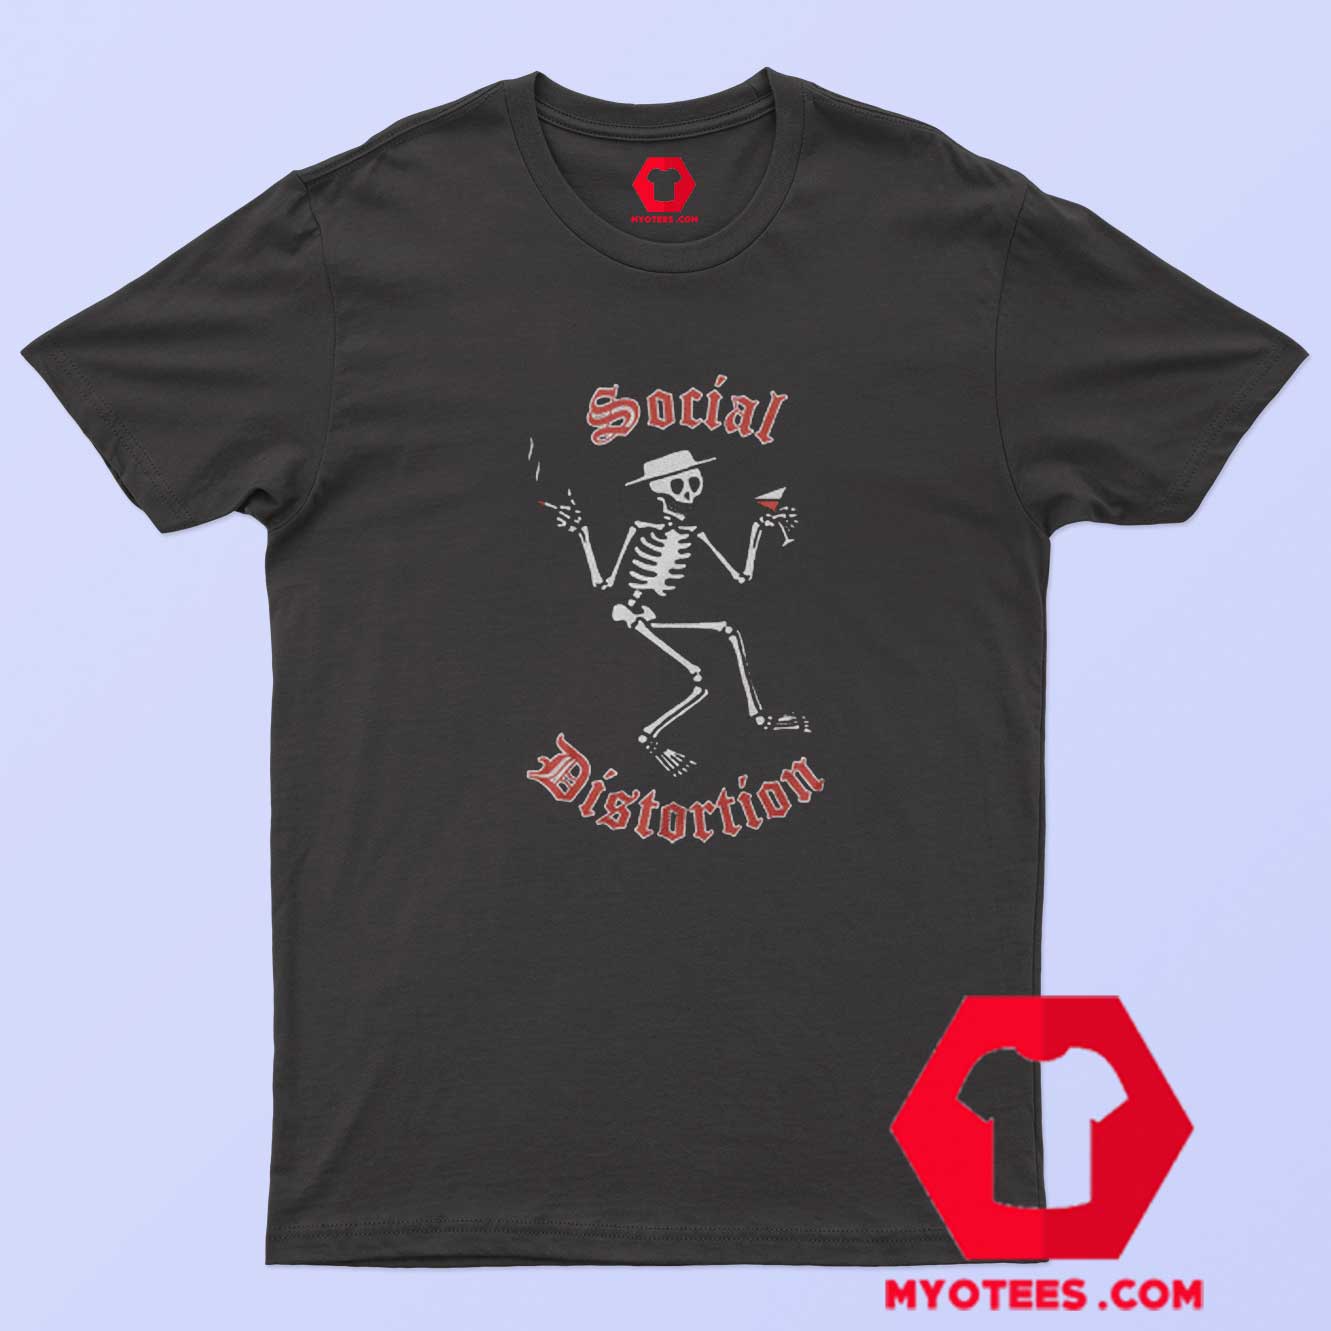 Social Distortion Skeleton Print and Martini T-Shirt On Sale | myotees.com